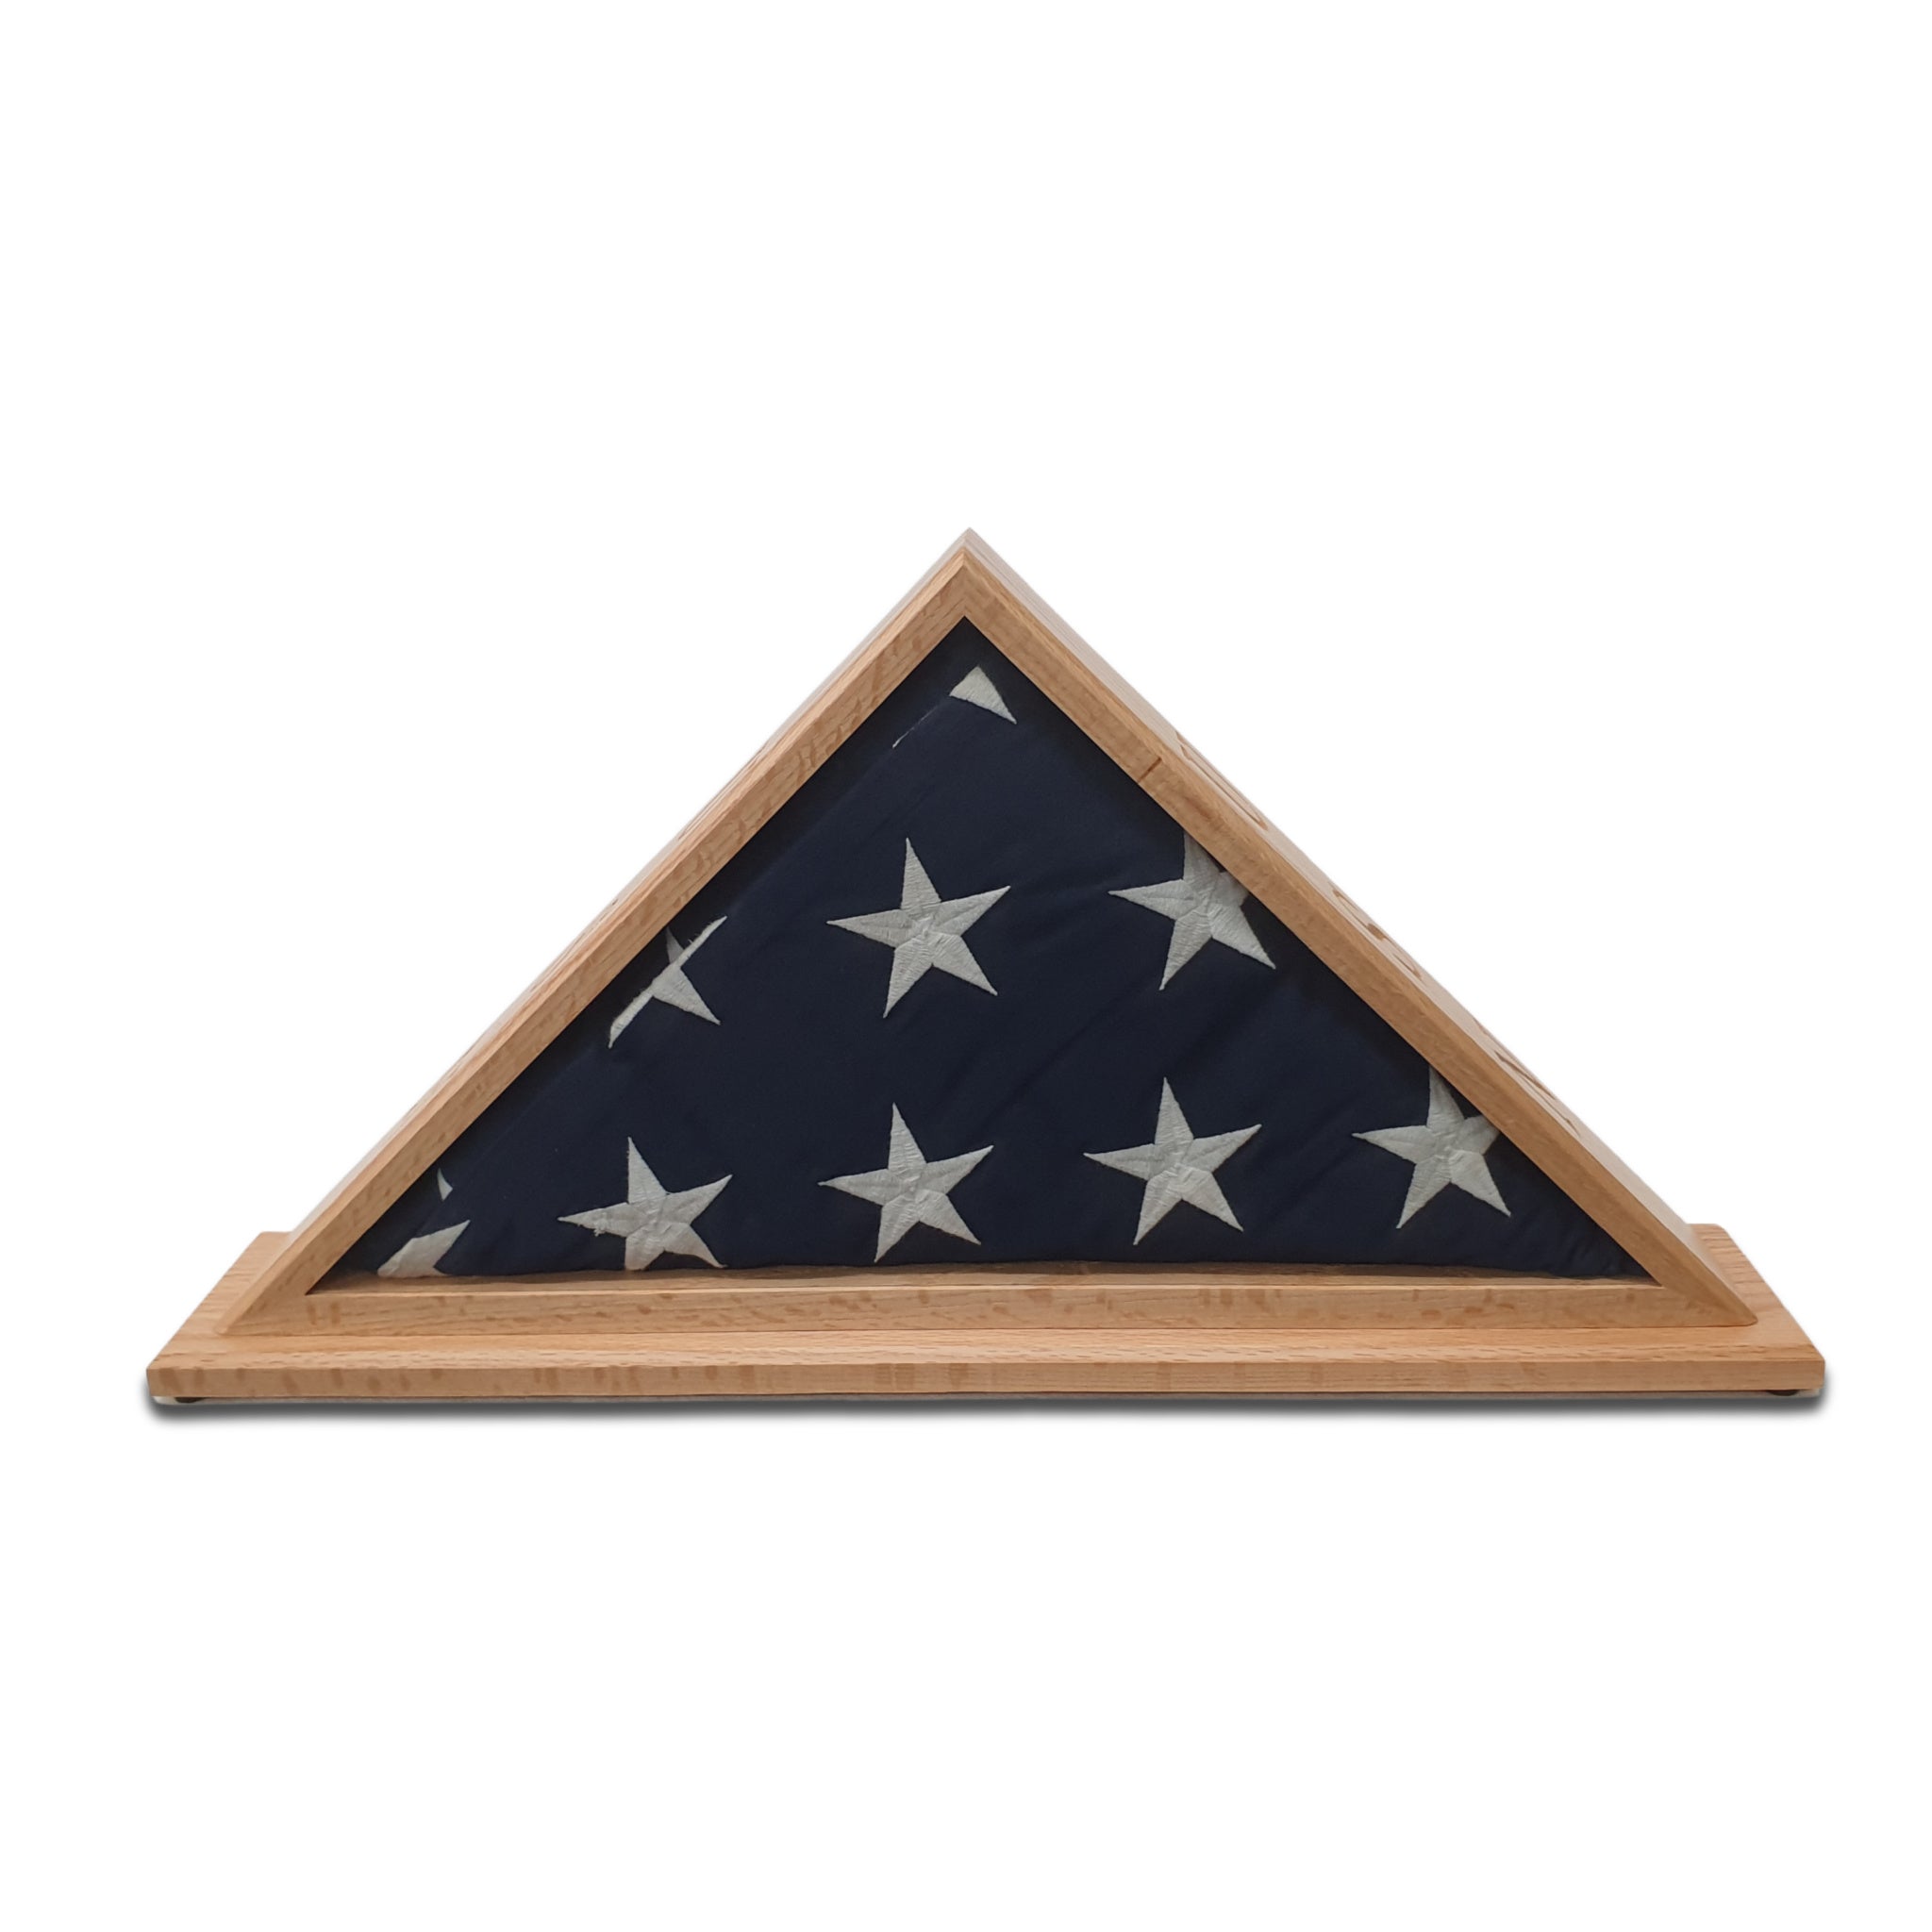 Oak USN Veteran Memorial Burial Flag Display Case. Shown with optional Mantel Base.